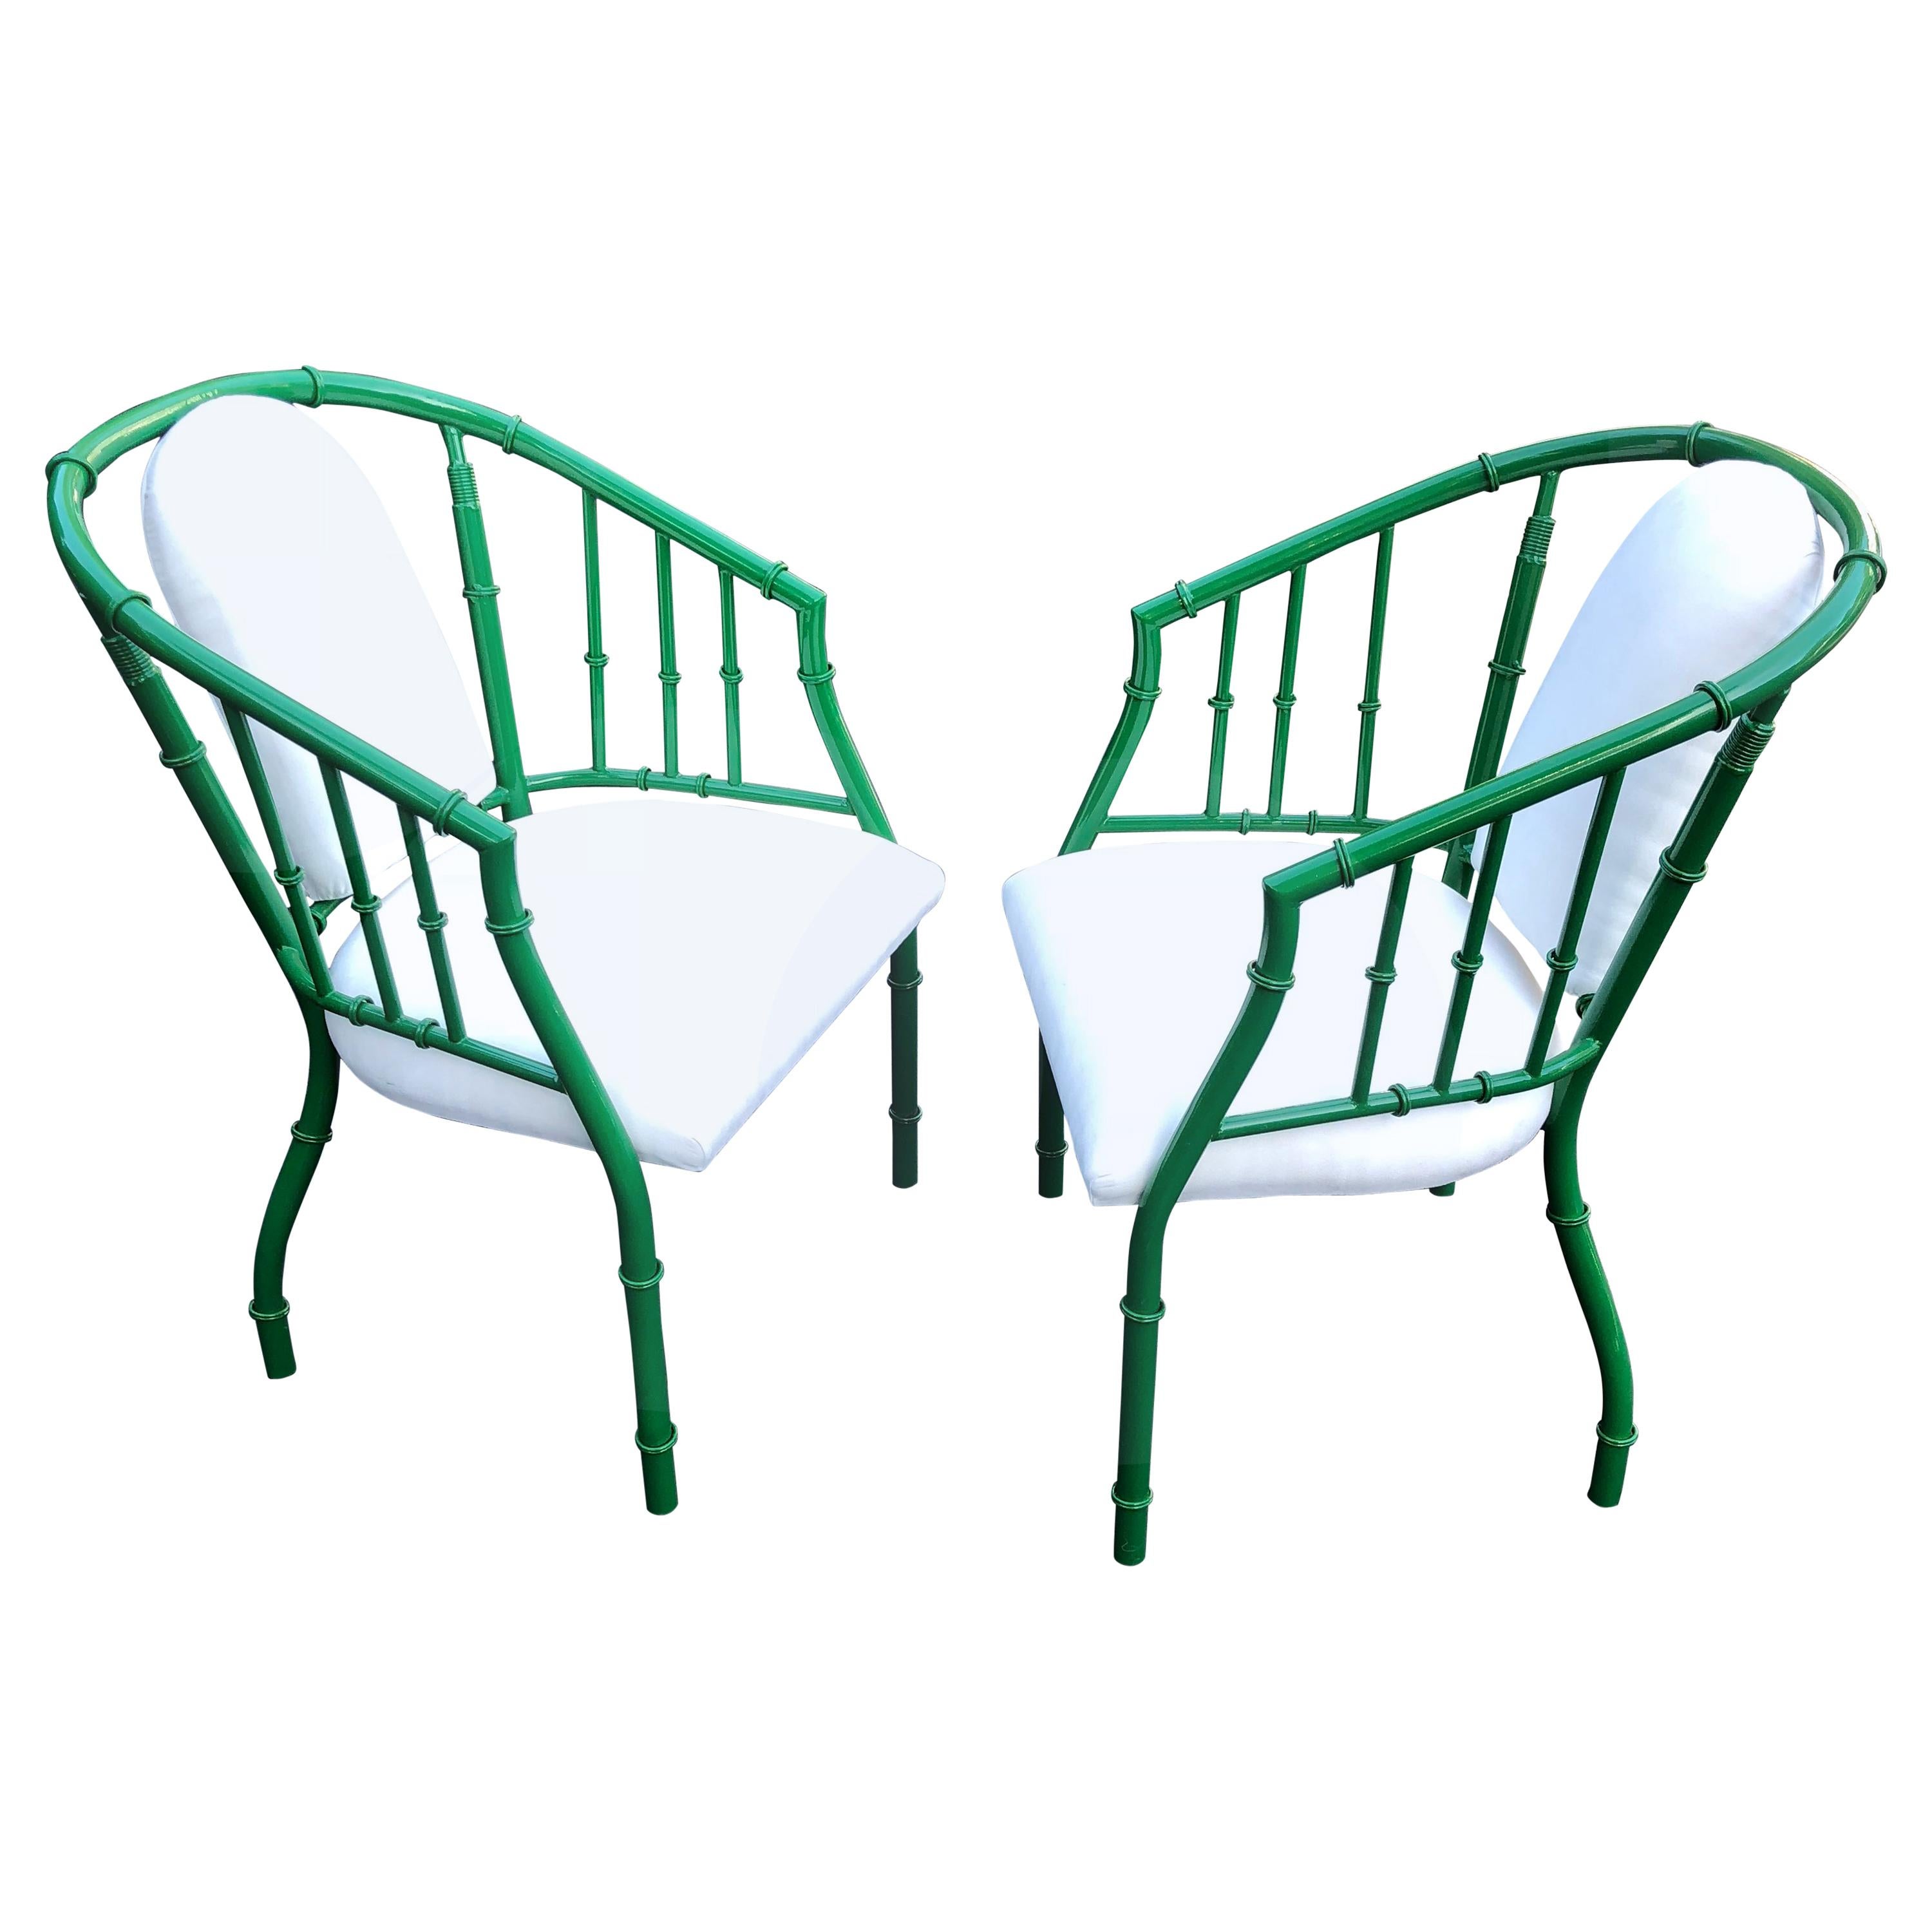 Paar französische grüne Mid-Century Modern Faux Bambus Metall Sessel
Neu grün pulverbeschichtet, war ursprünglich verschlissenes Chrom
Neu gepolstert mit weißem Wildlederimitat.

DC, Philadelphia Haustür Händler Lieferung verfügbar.